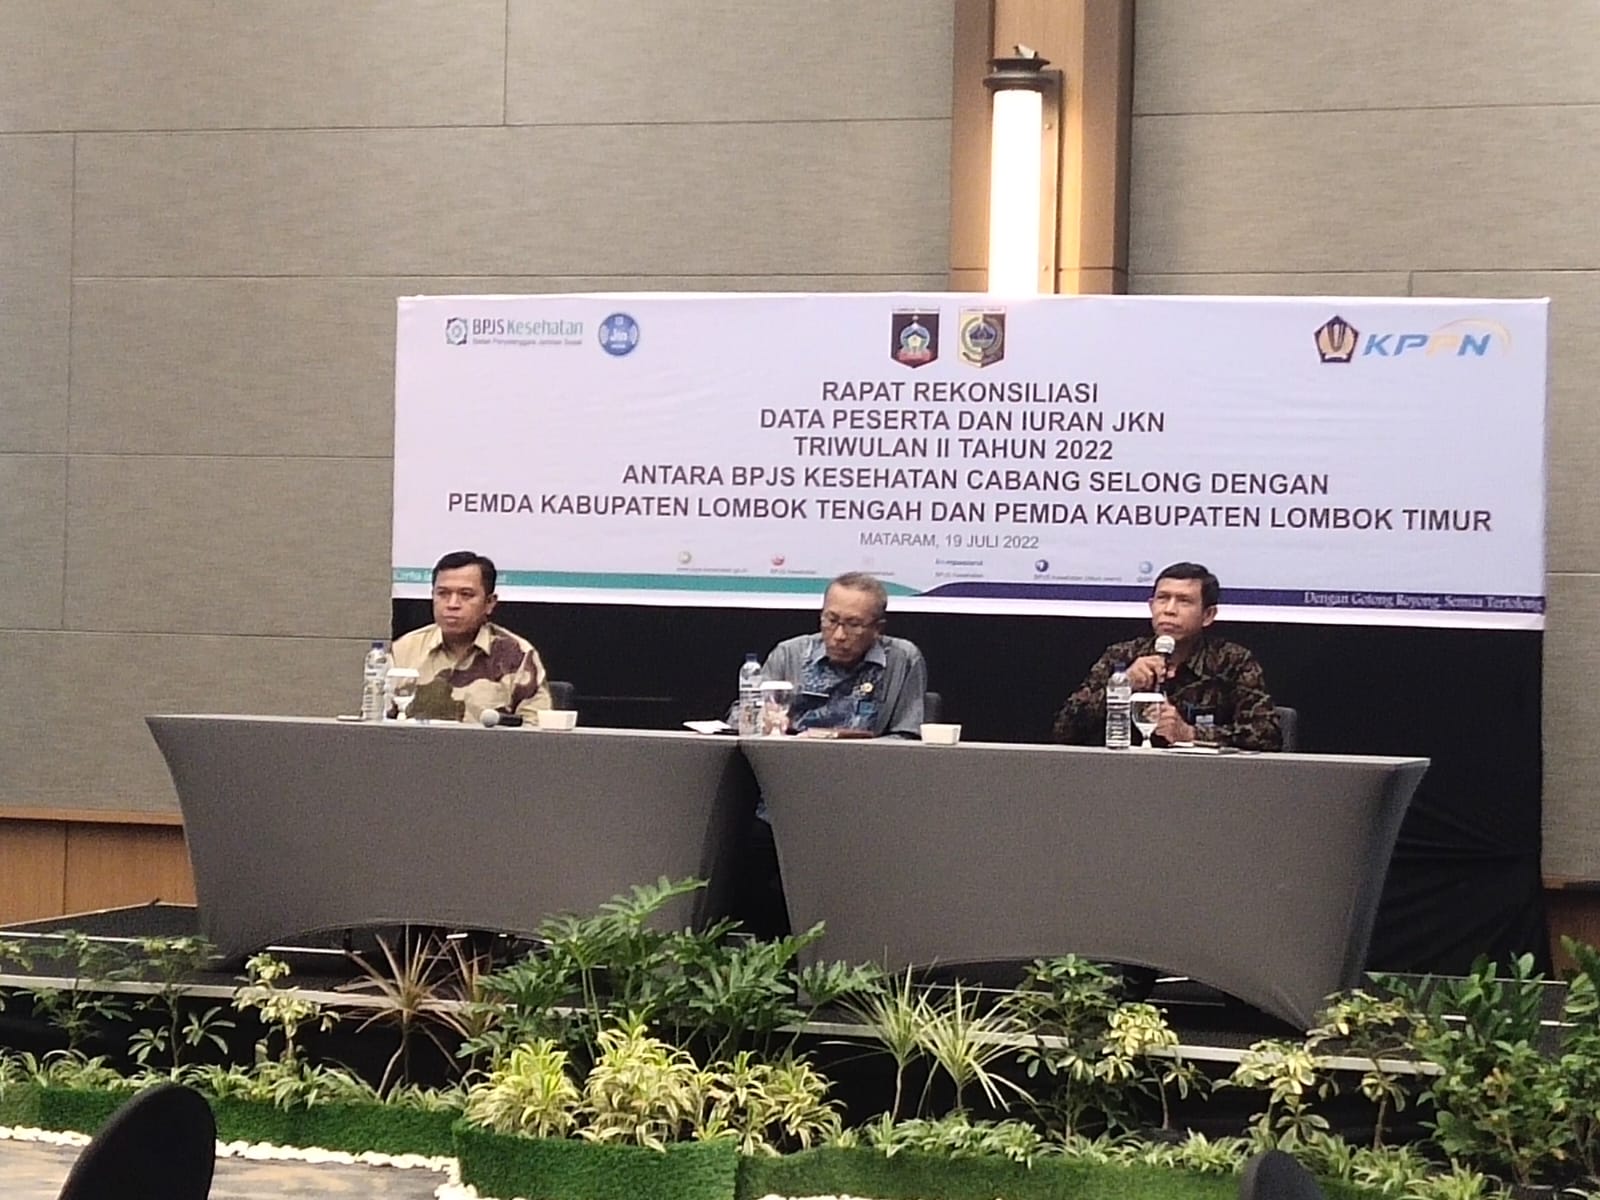 Rapat Rekonsiliasi Data Peserta dan Iuran JKN Triwulan II Tahun 2022 antara BPJS Kesehatan Cab. Selong dengan Pemda Kab. Loteng dan Pemda Kab. Lotim di Mataram (19-07-2022).